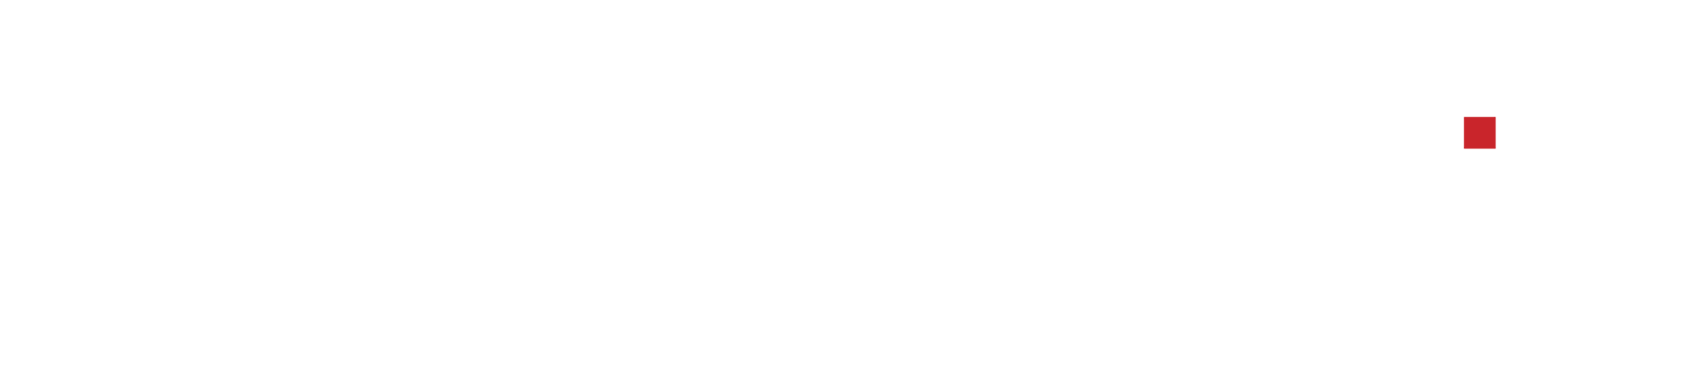 Avermedia logo w